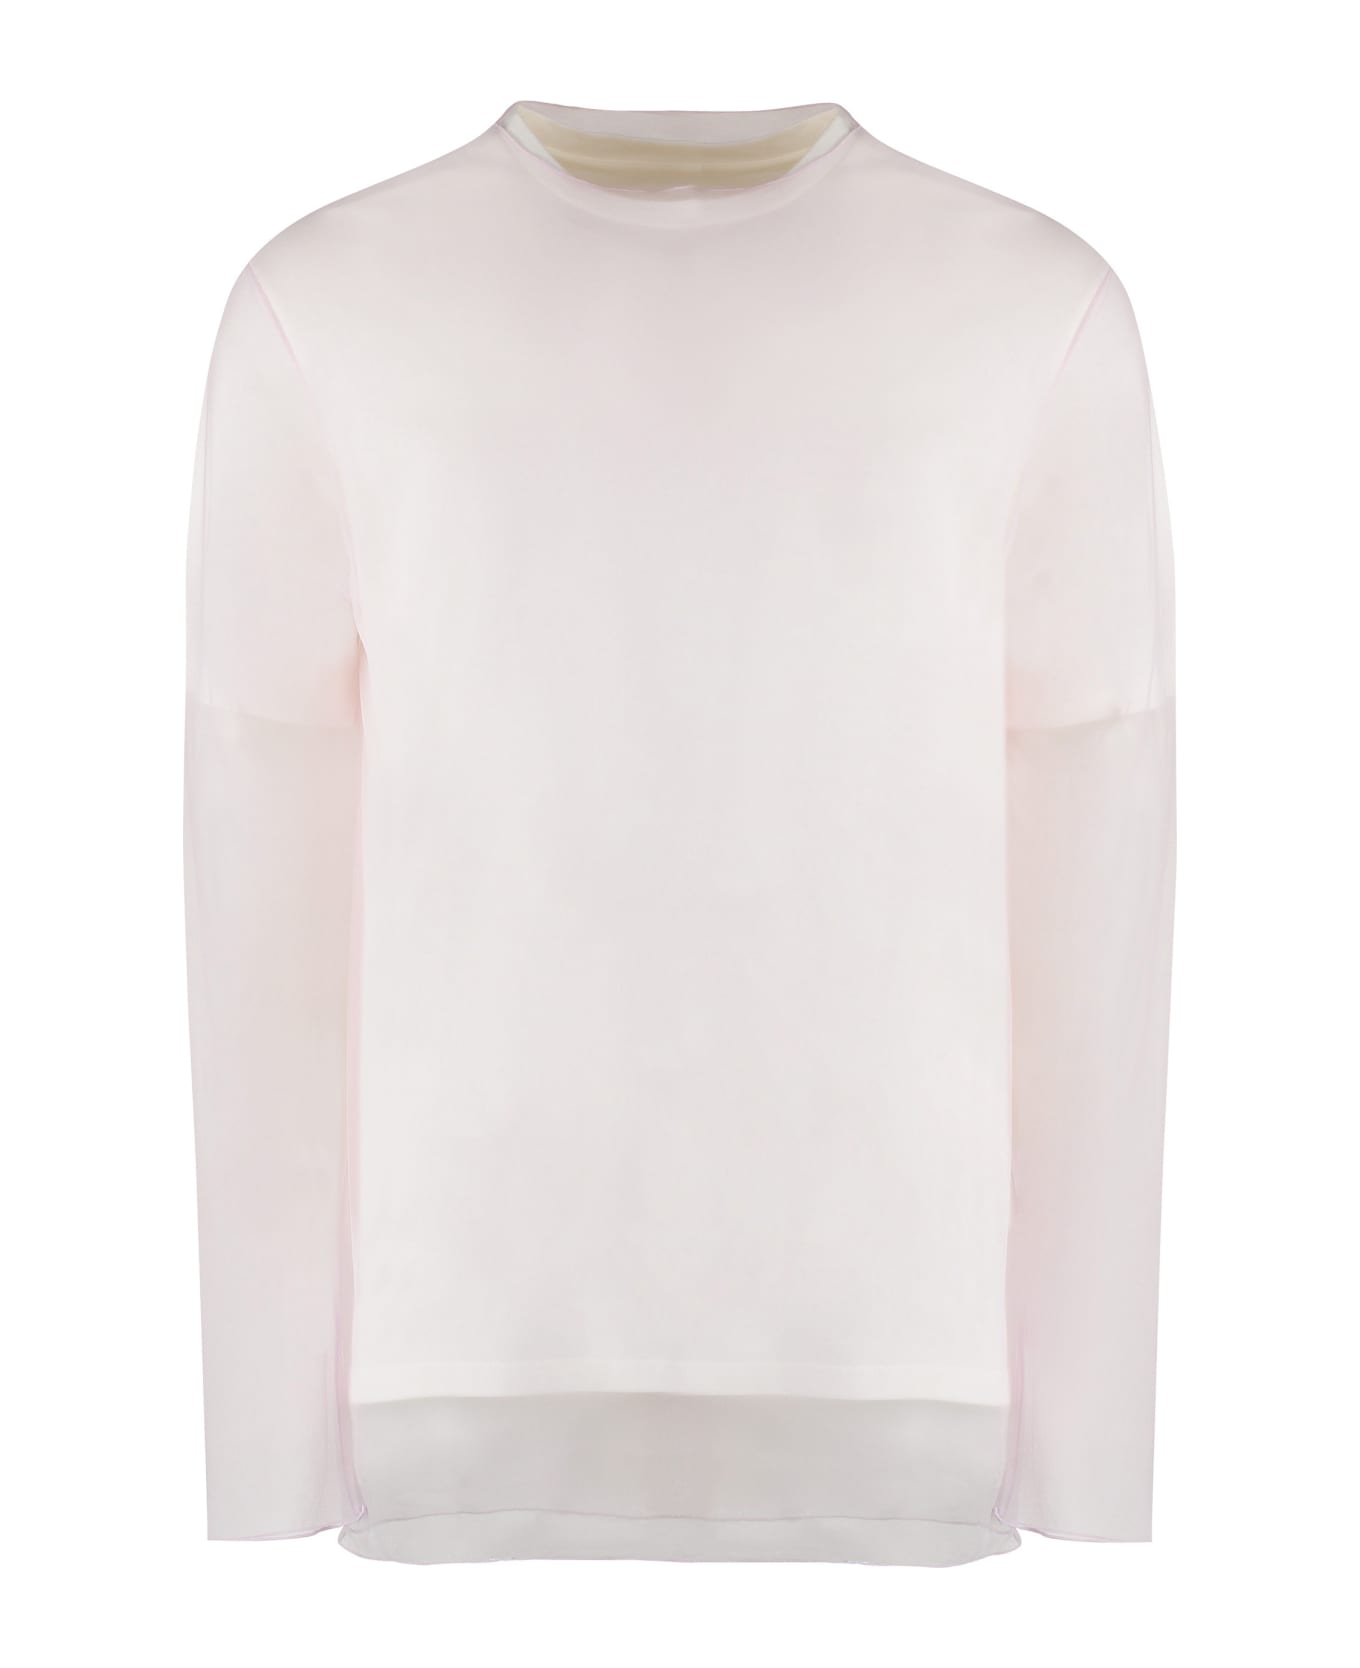 Jil Sander Layered Cotton T-shirt - White シャツ